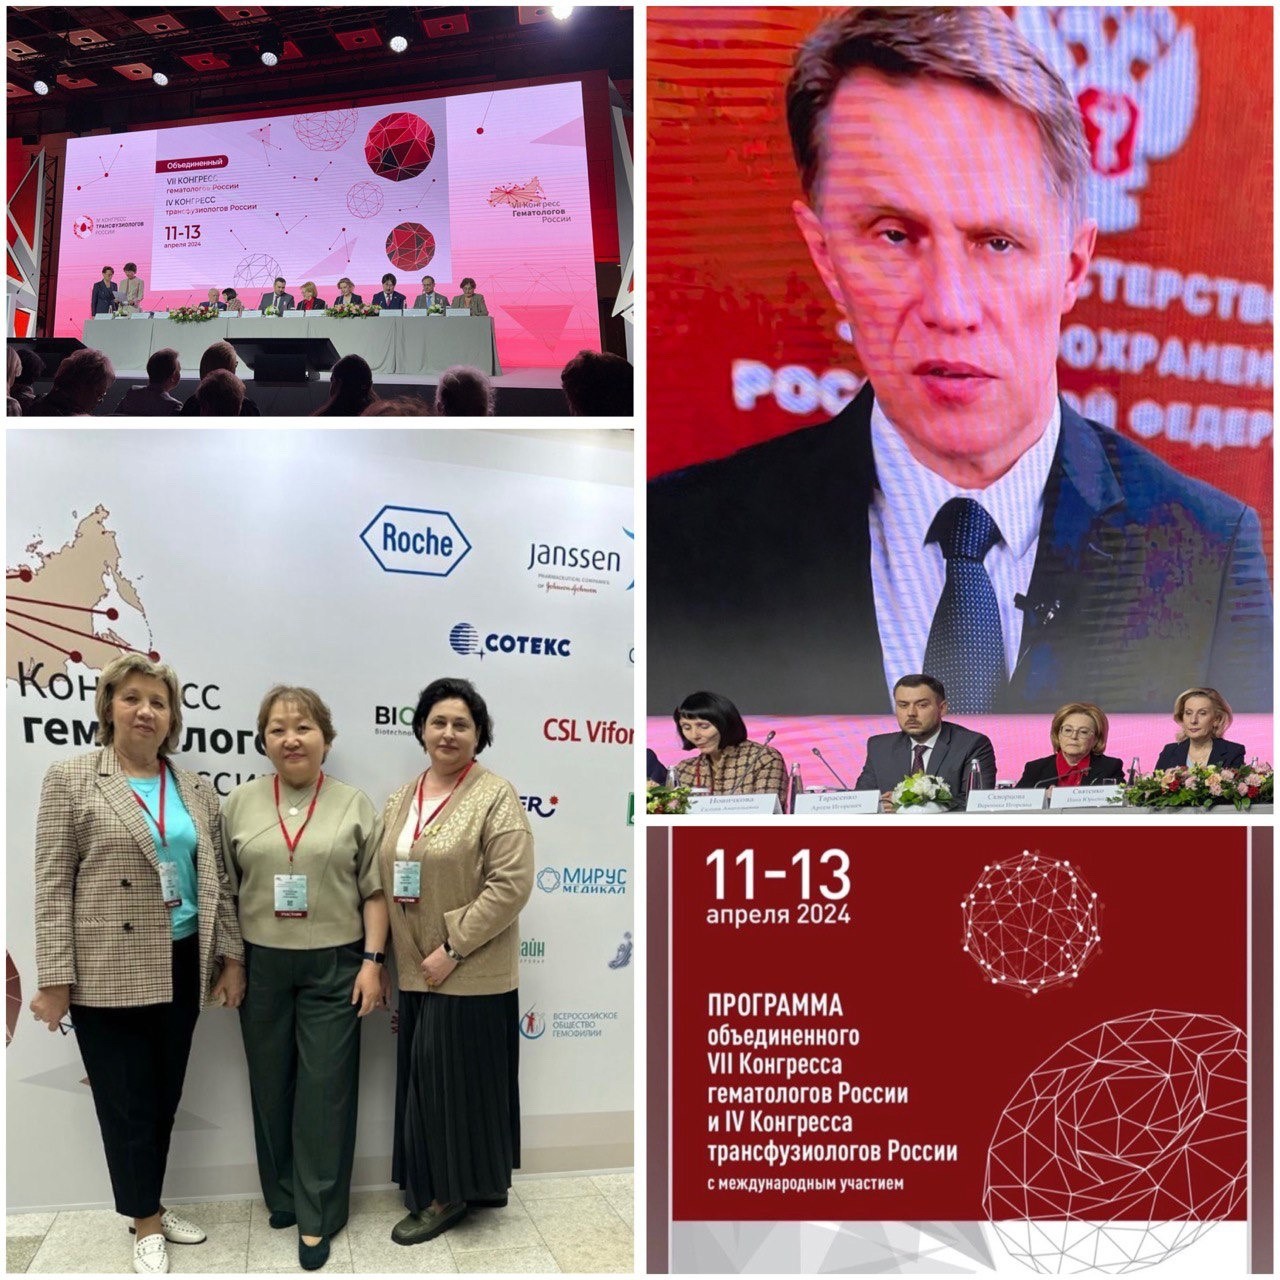 11-13 апреля 2024 года в г.Москве прошел объединённый VII Конгресс гематологов России и IV Конгресс трансфузиологов России с международным участием.